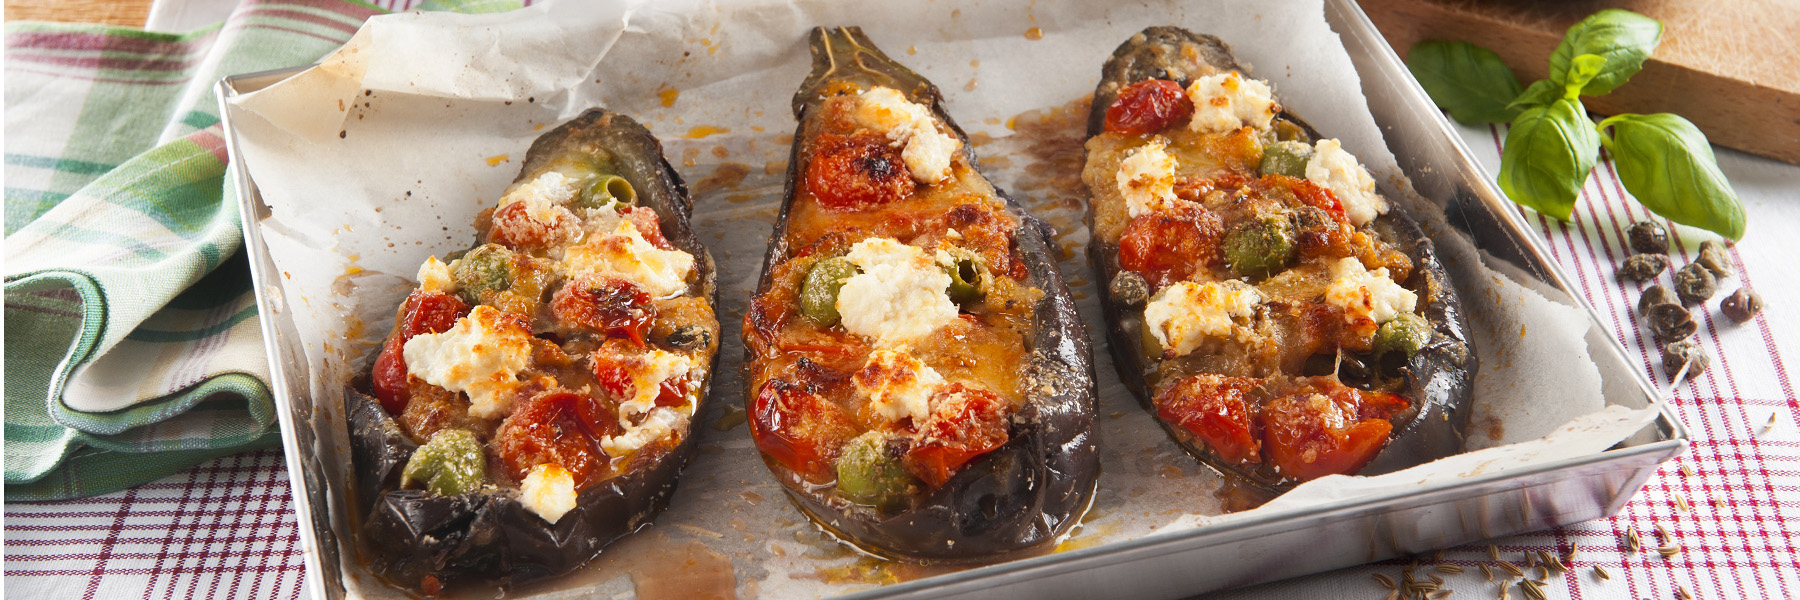 Bakłażanowe łódki nadziewane mozzarellą i pomidorami - Galbani – od ponad 140 lat dostarczamy najlepsze włoskie smaki na talerze całego świata